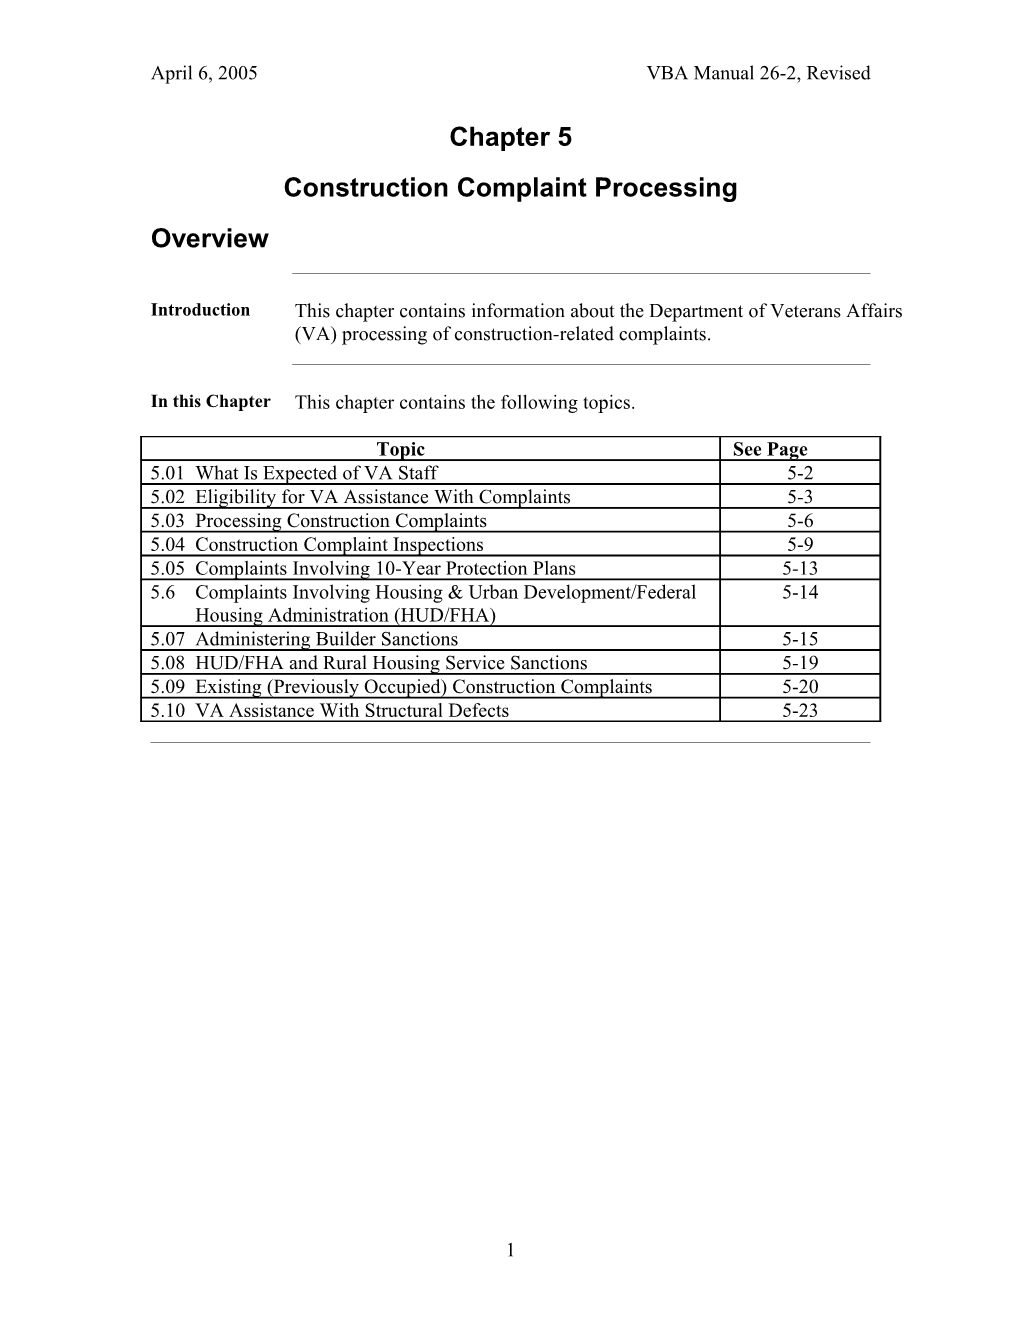 Construction Complaint Processing